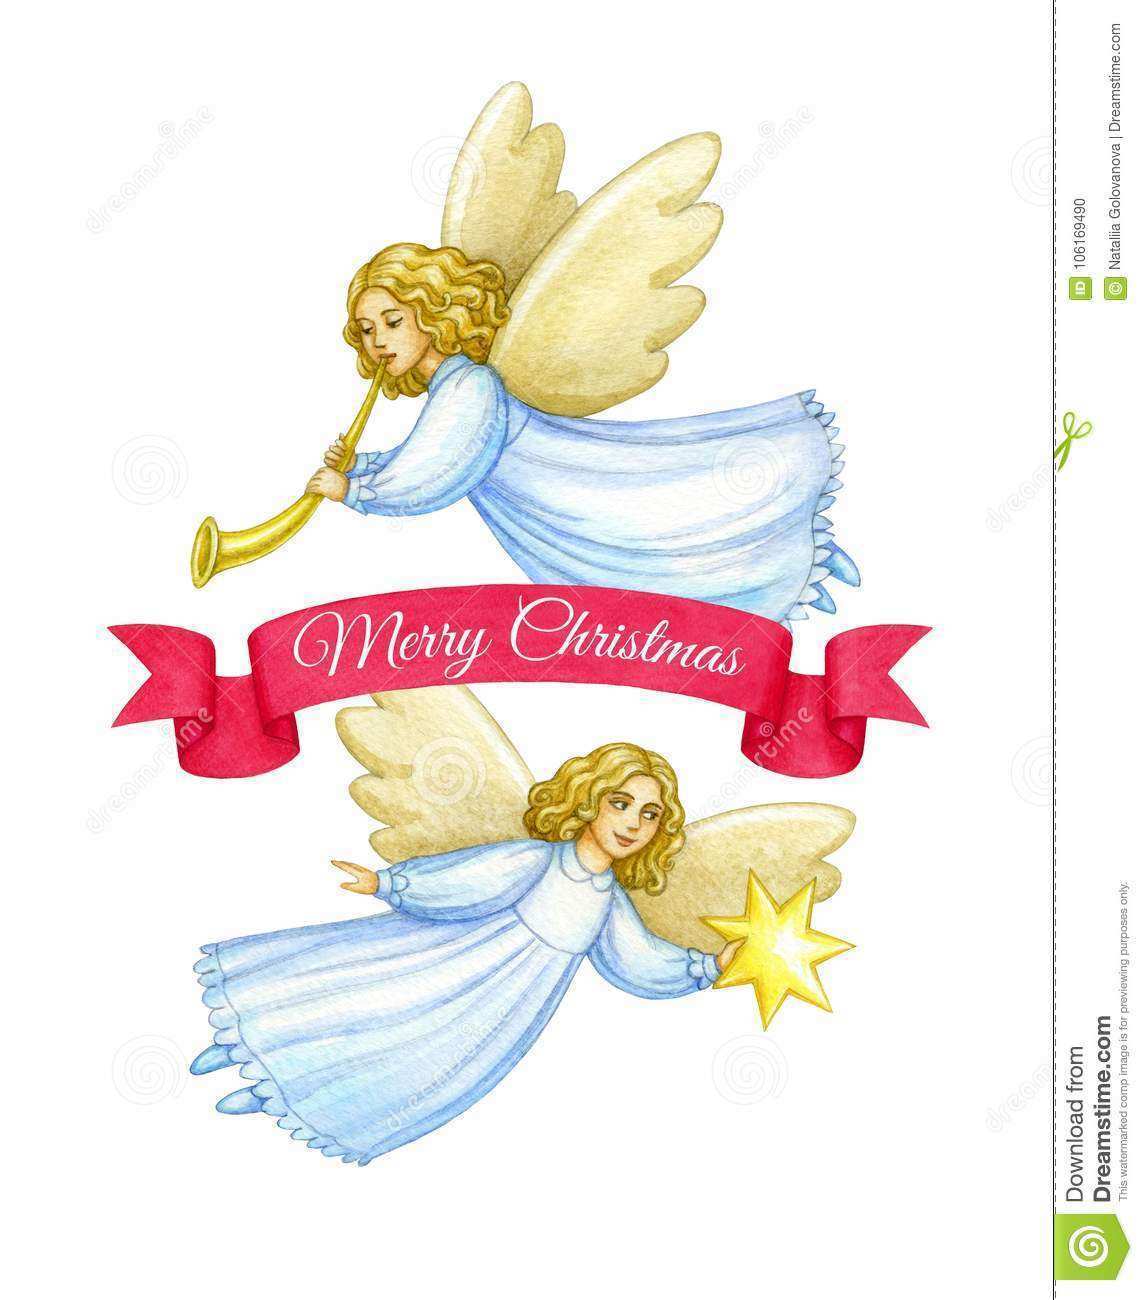 86 Free Printable Christmas Card Angel Template Photo for Christmas Card Angel Template